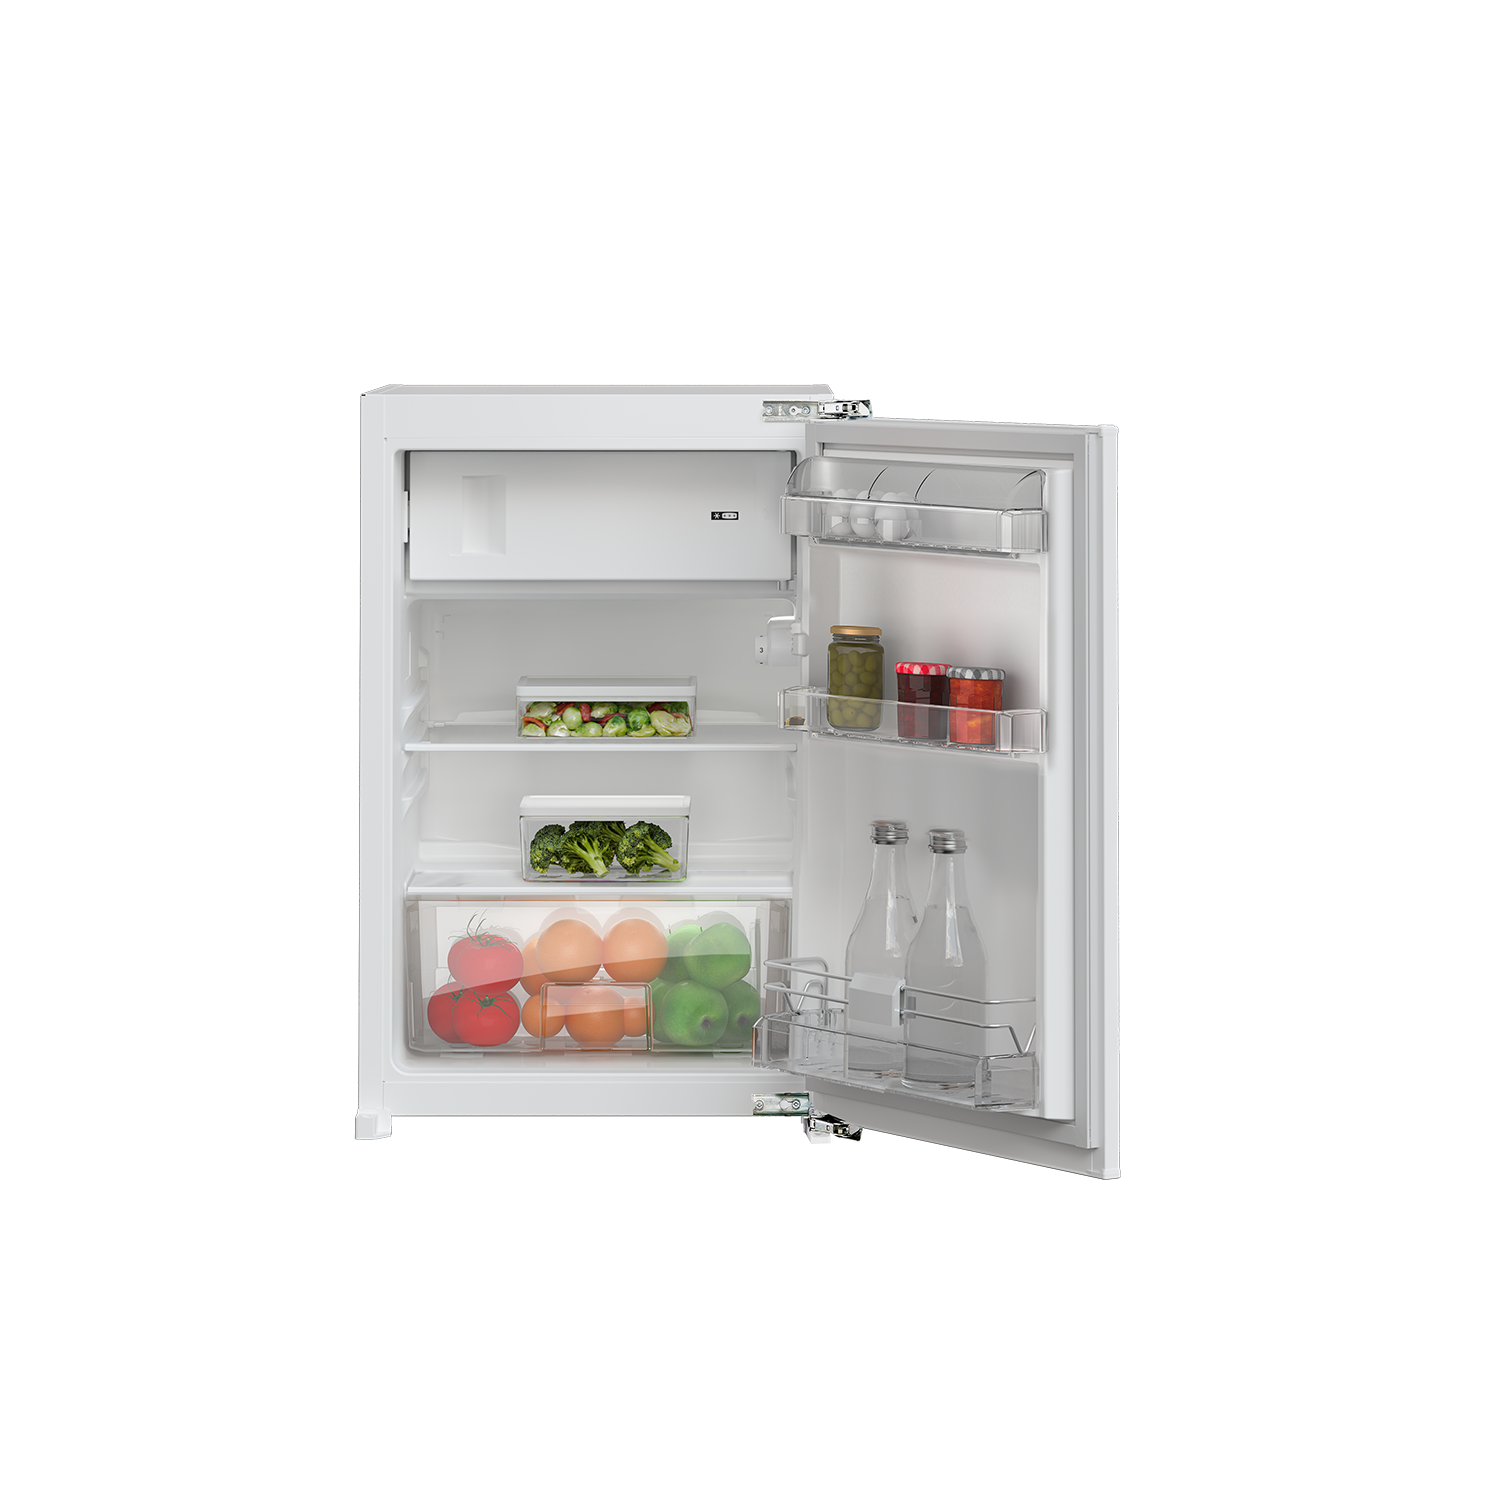 GTMI14141FN - Kühlschrank - jetzt kaufen | Kühlen & Gefrieren | Grundig